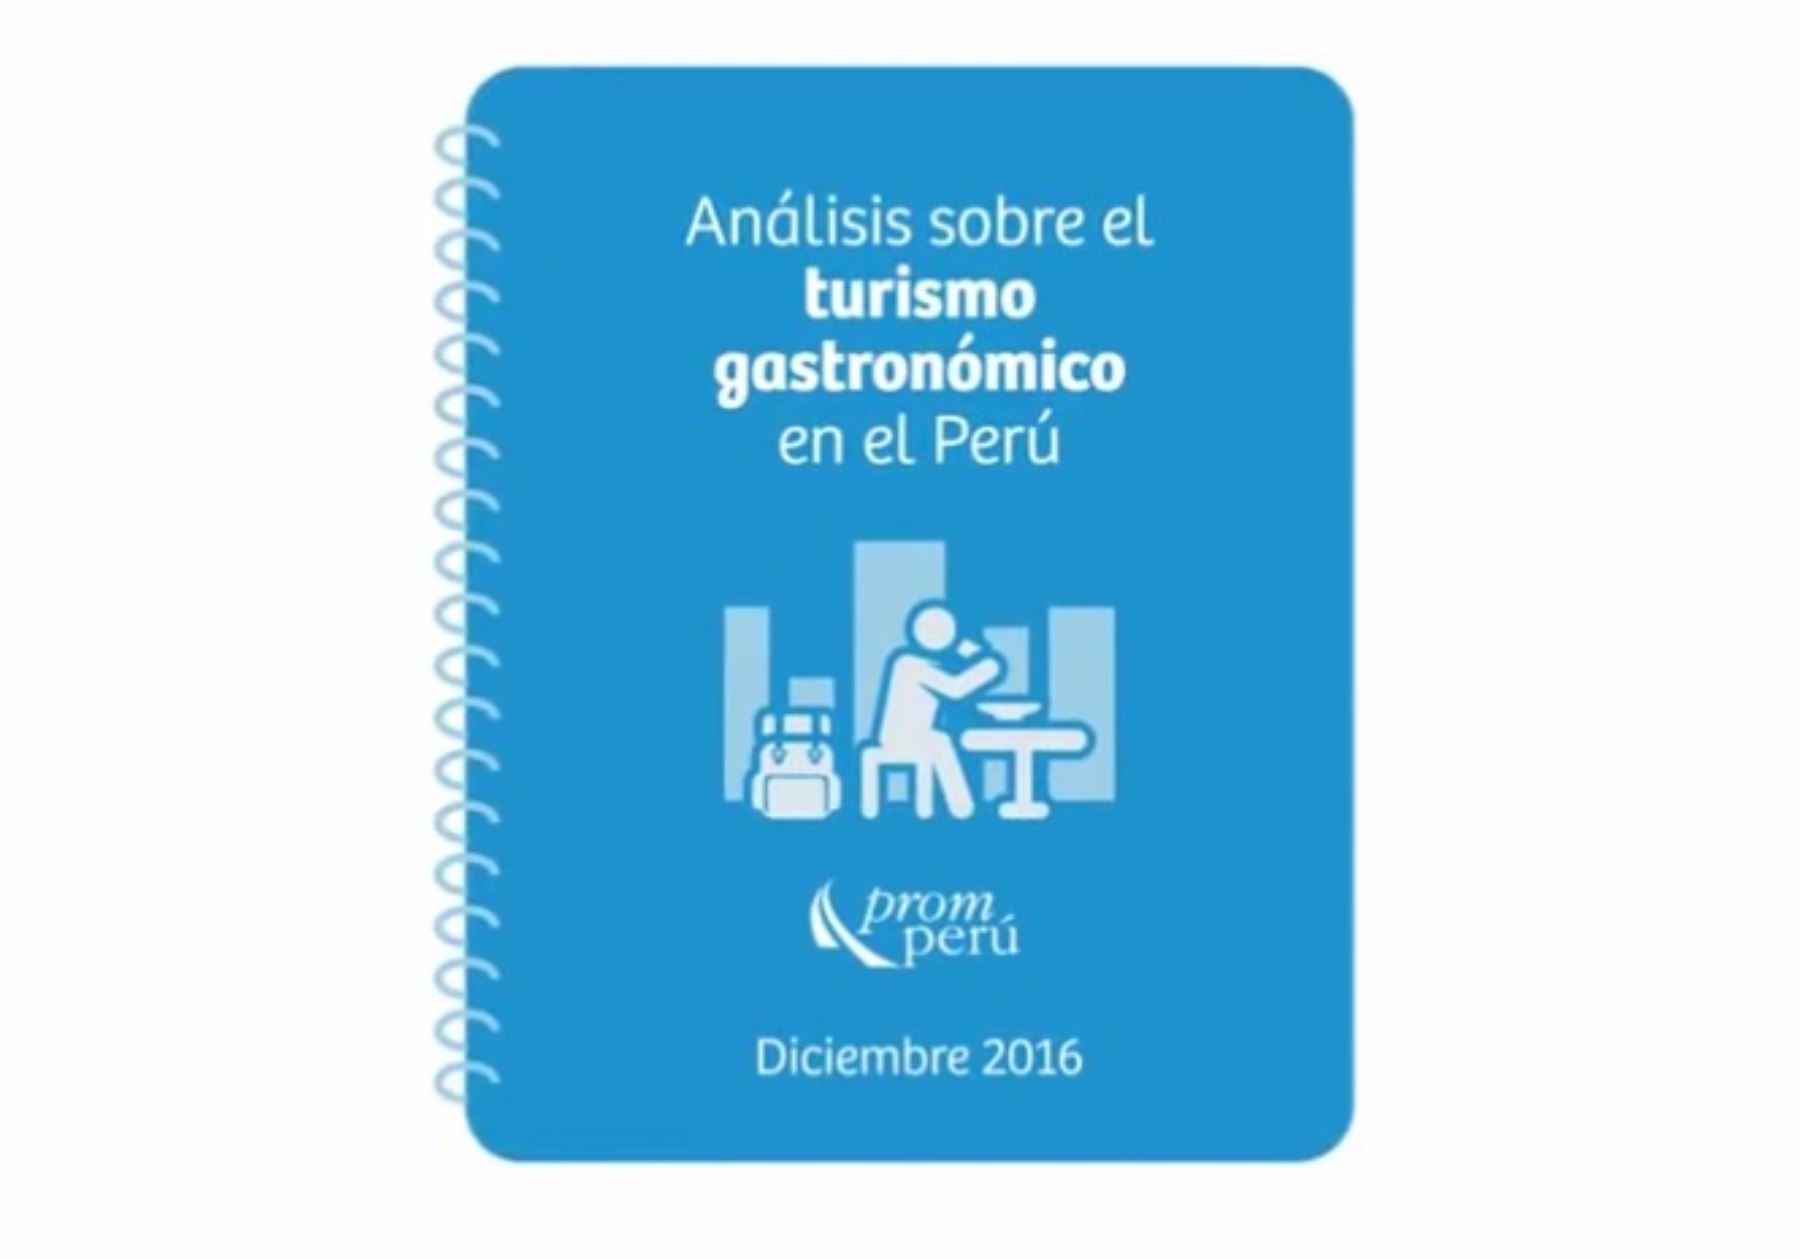 "Análisis sobre el turismo gastronómico en el Perú" (2016), elaborado por Promperú.